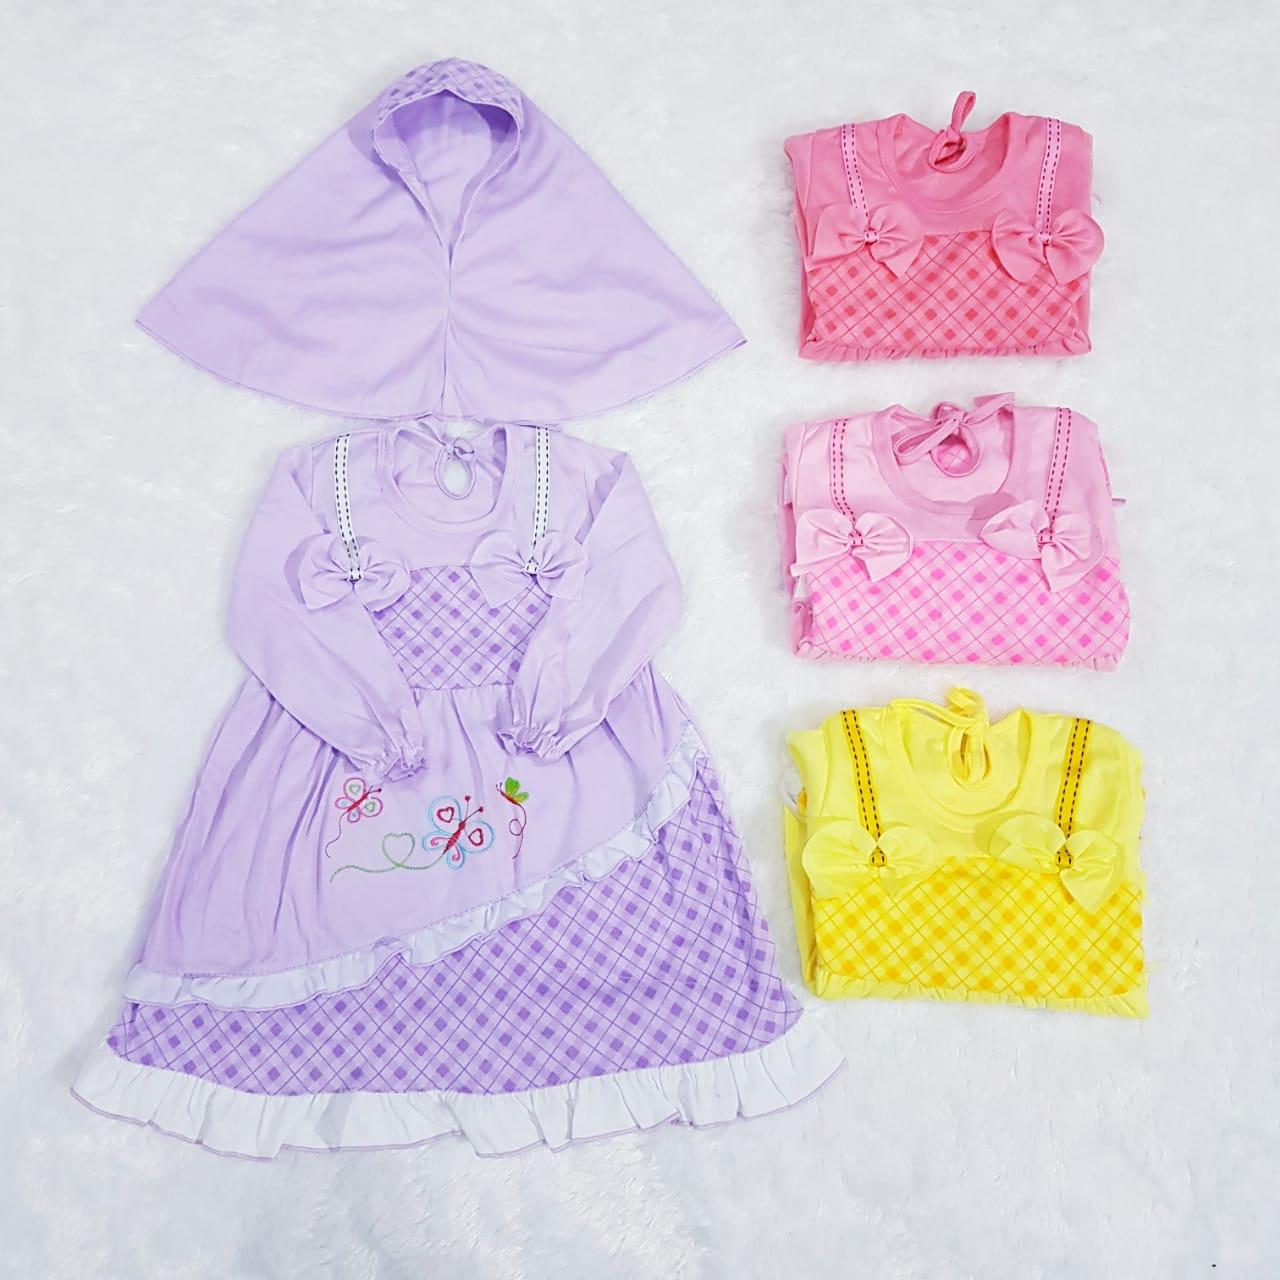 Baju Baby Dress Gamis Baby Baju Bayi 3 18 Bulan Setelan Baby Baju Anak Setelan Anak Baju Balon Baju Lol Baju Baby Alicia Baju Fawa